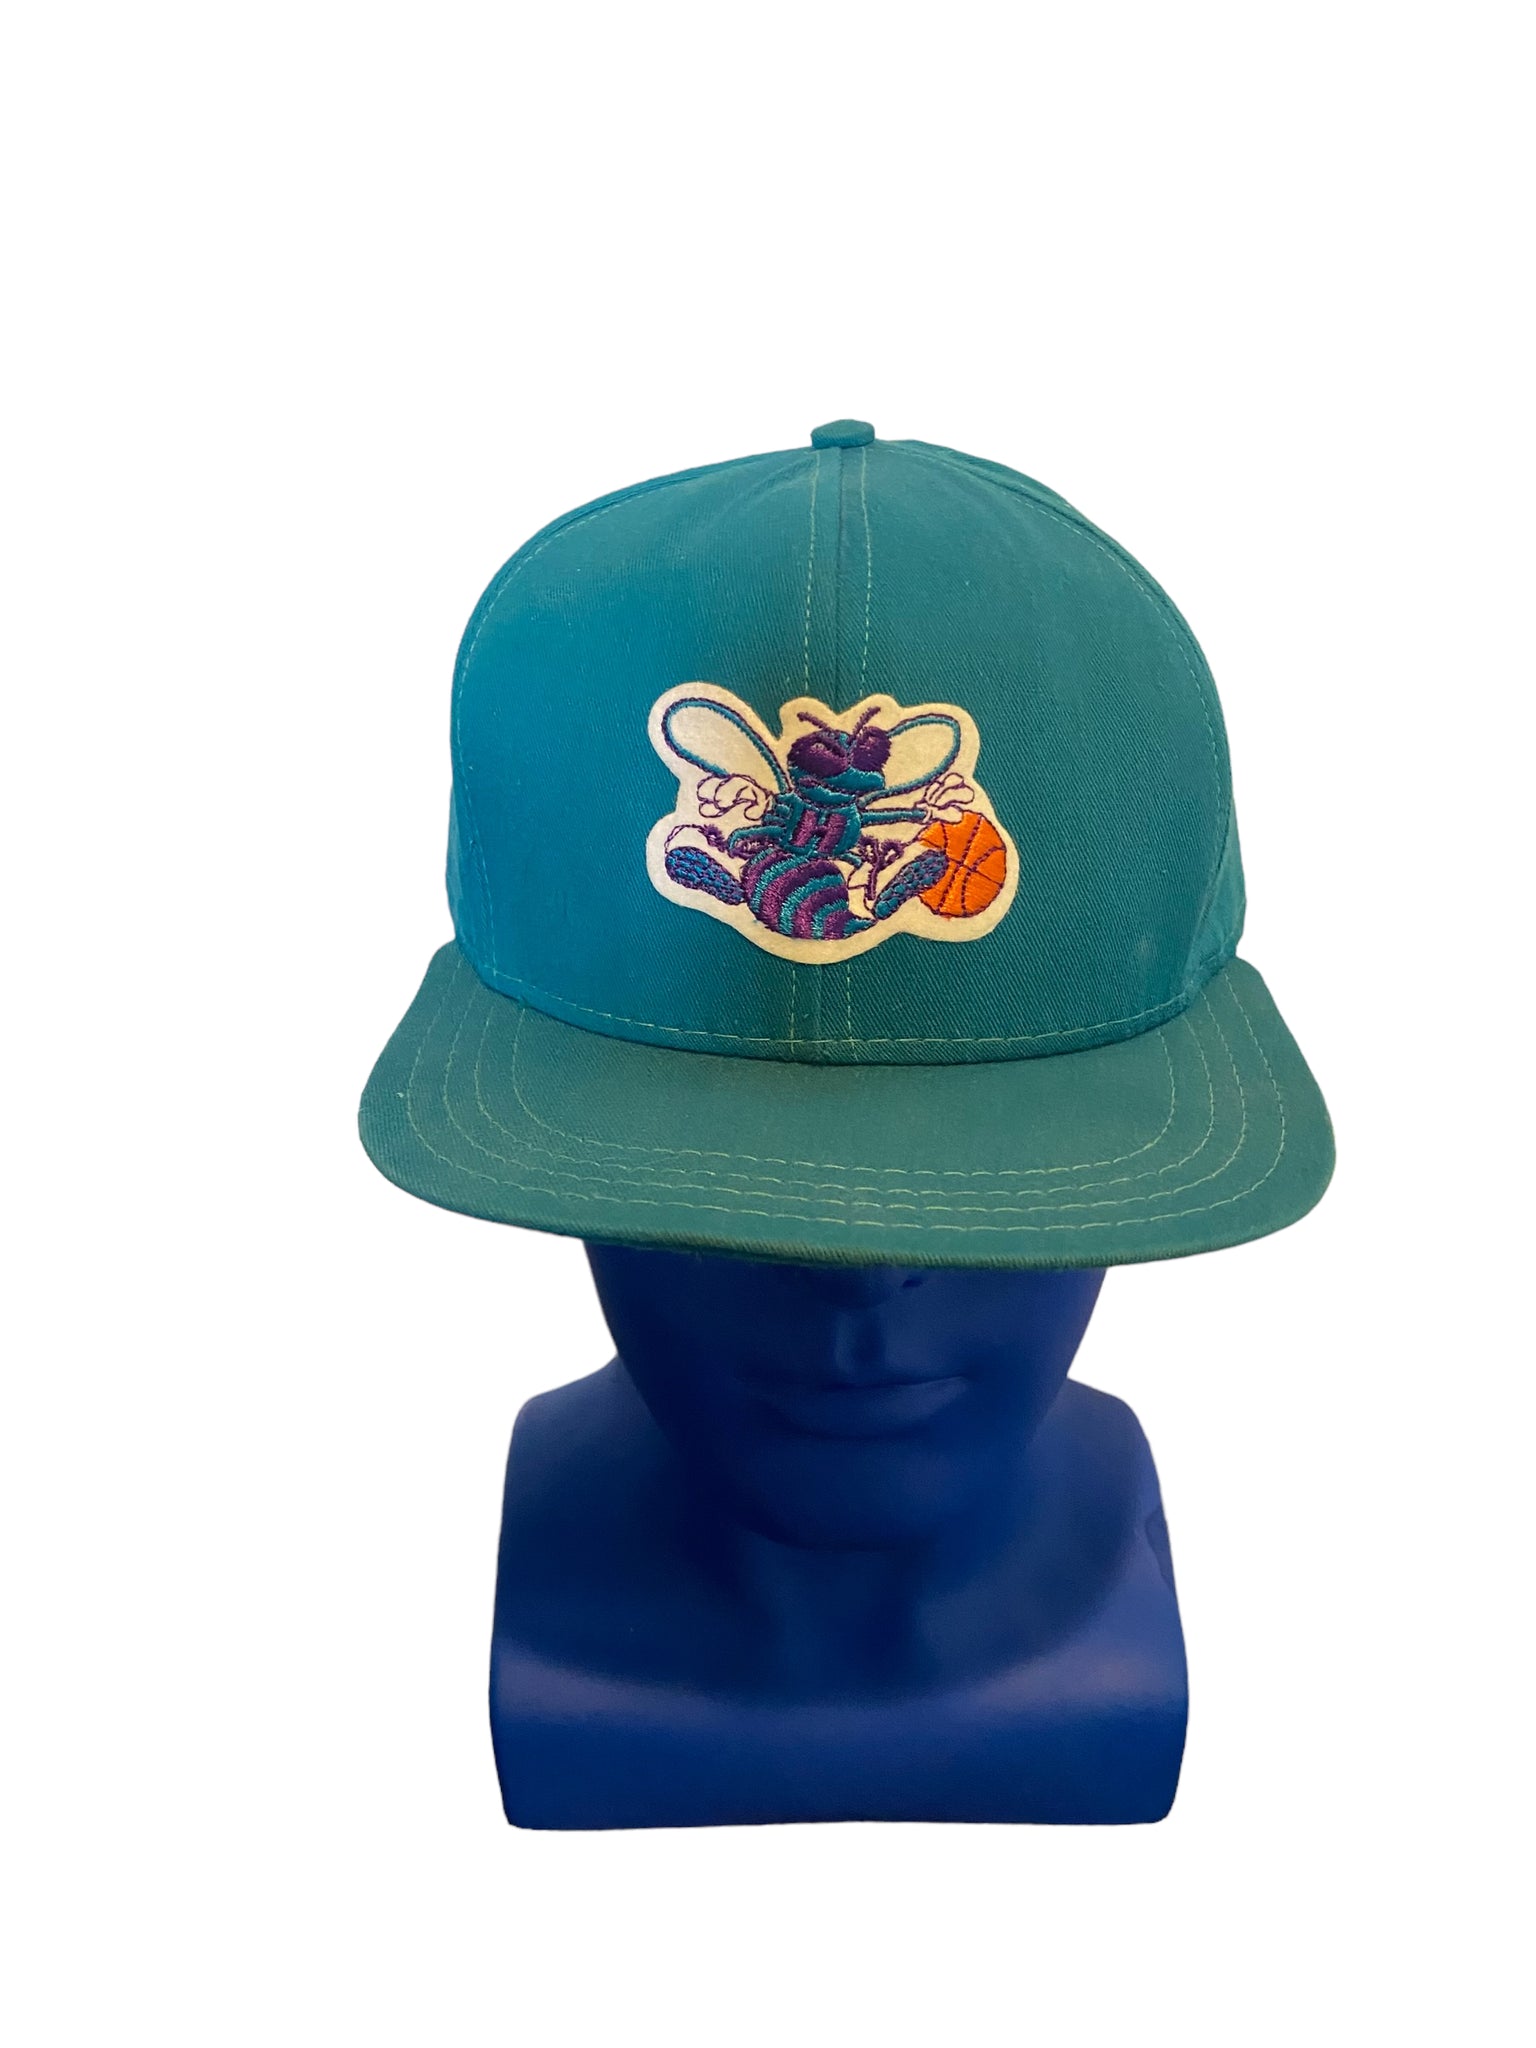 vintage ajd hat charlotte hornets logo patch snapback hat